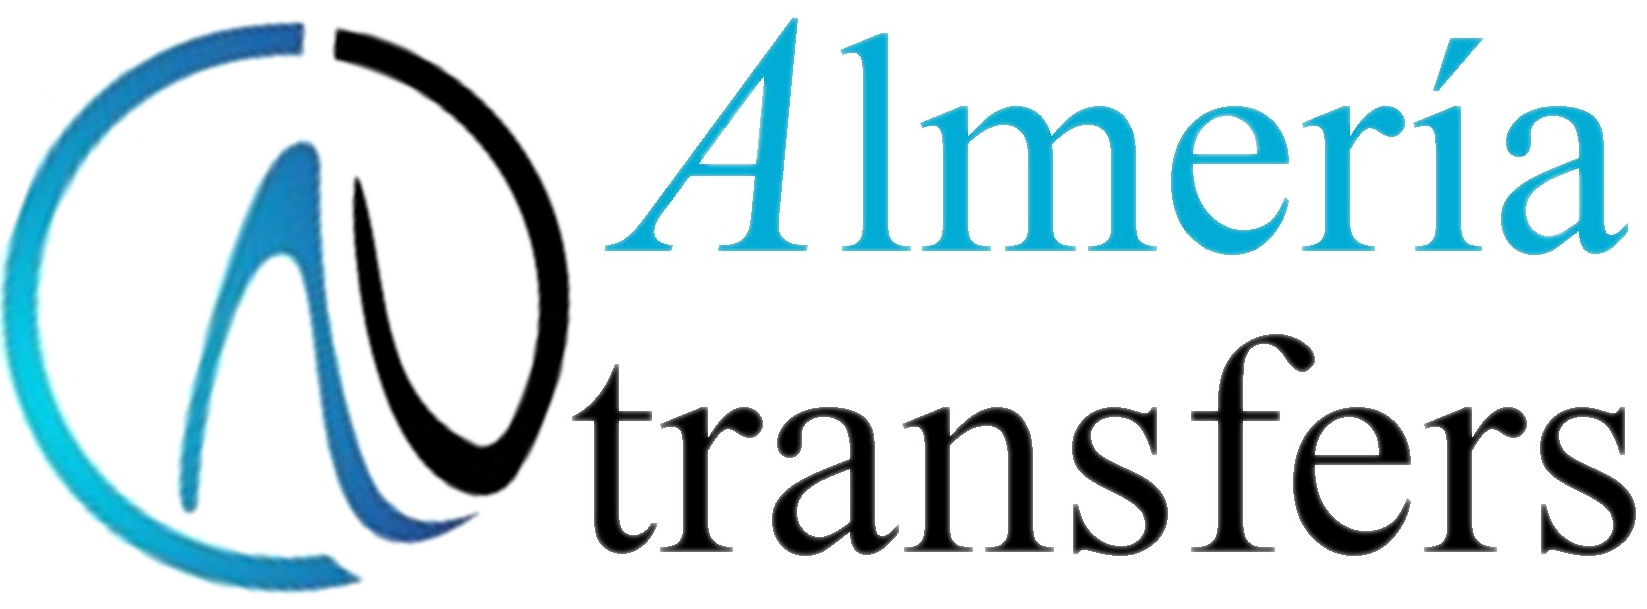 Traslados Low Cost Almería y Aeropuerto. Almería Transfers - Transporte - Alquiler de Coches con Conductor VTC